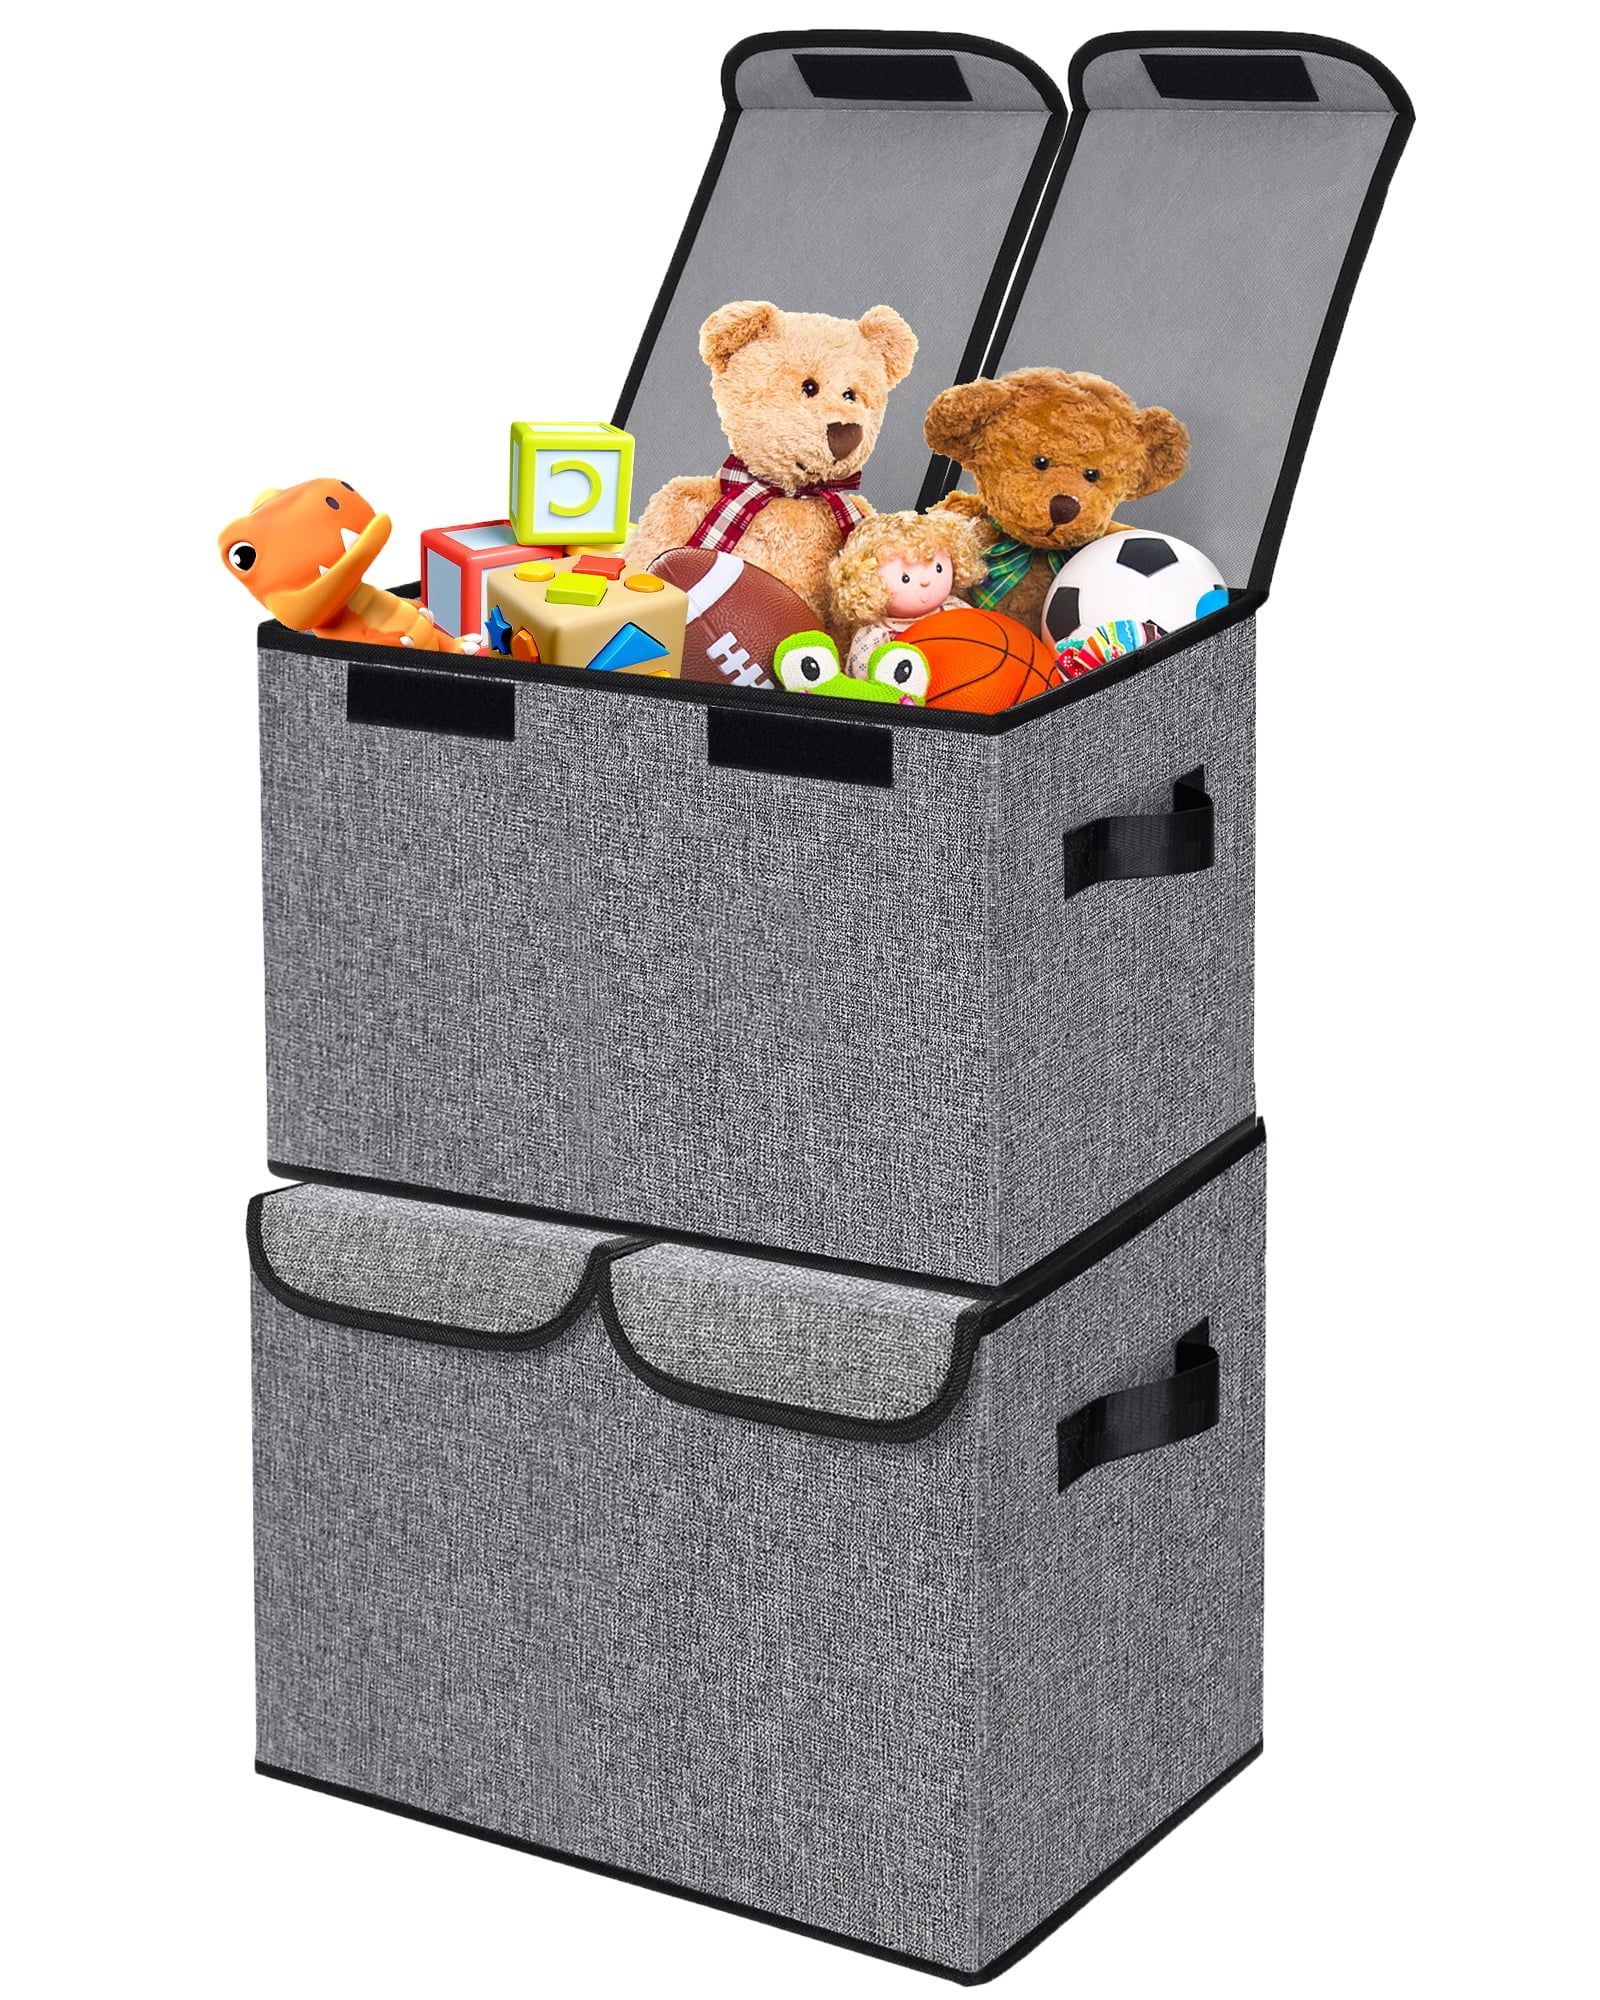  2pcs storage bins, toy storage organizer, Zippered